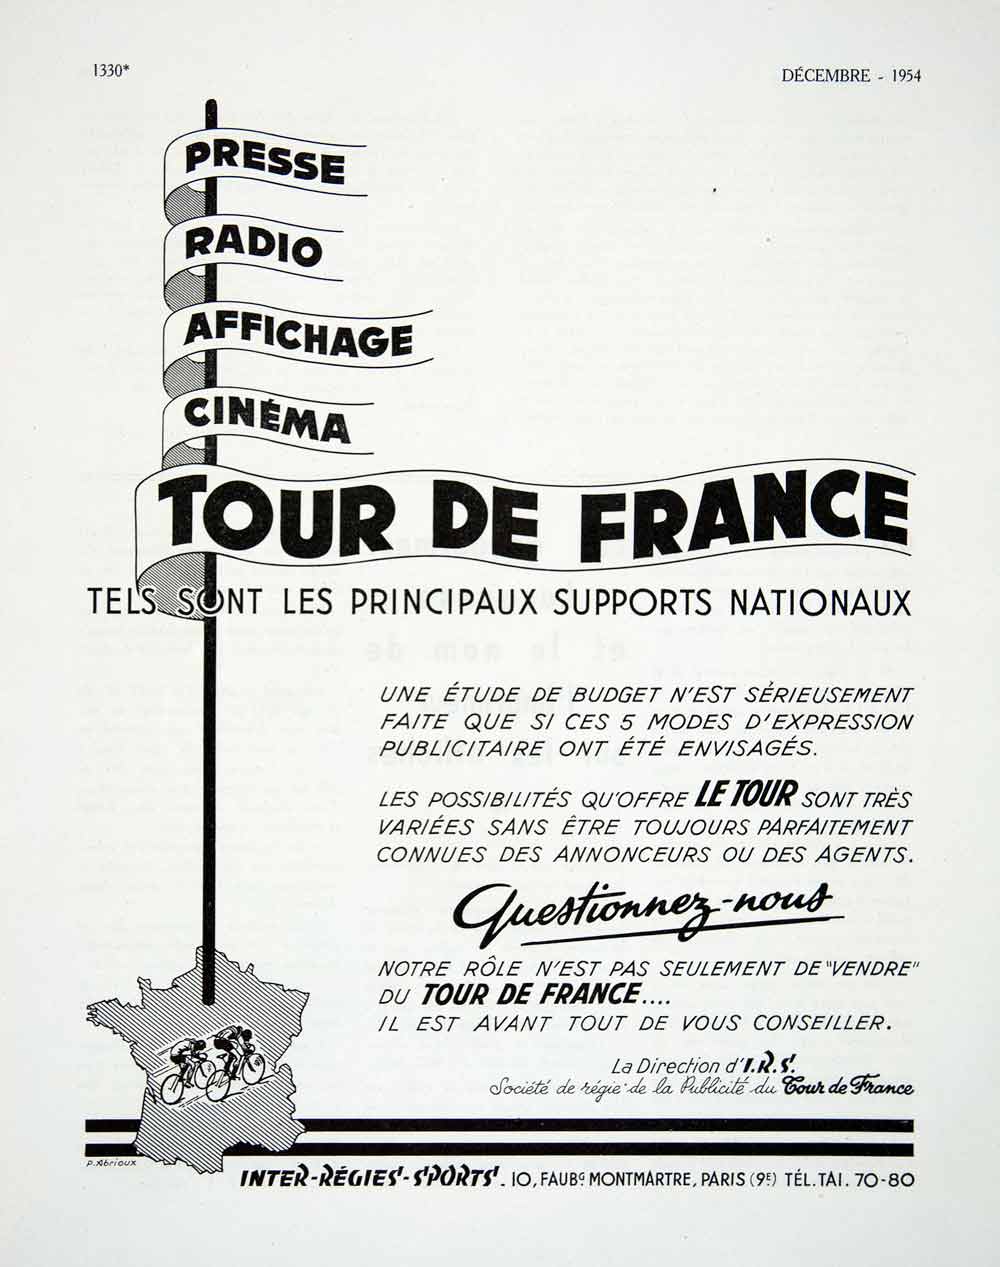 1954 Ad Tour de France Inter-Regies-Sports 10 Faubourg Montmartre VEN8